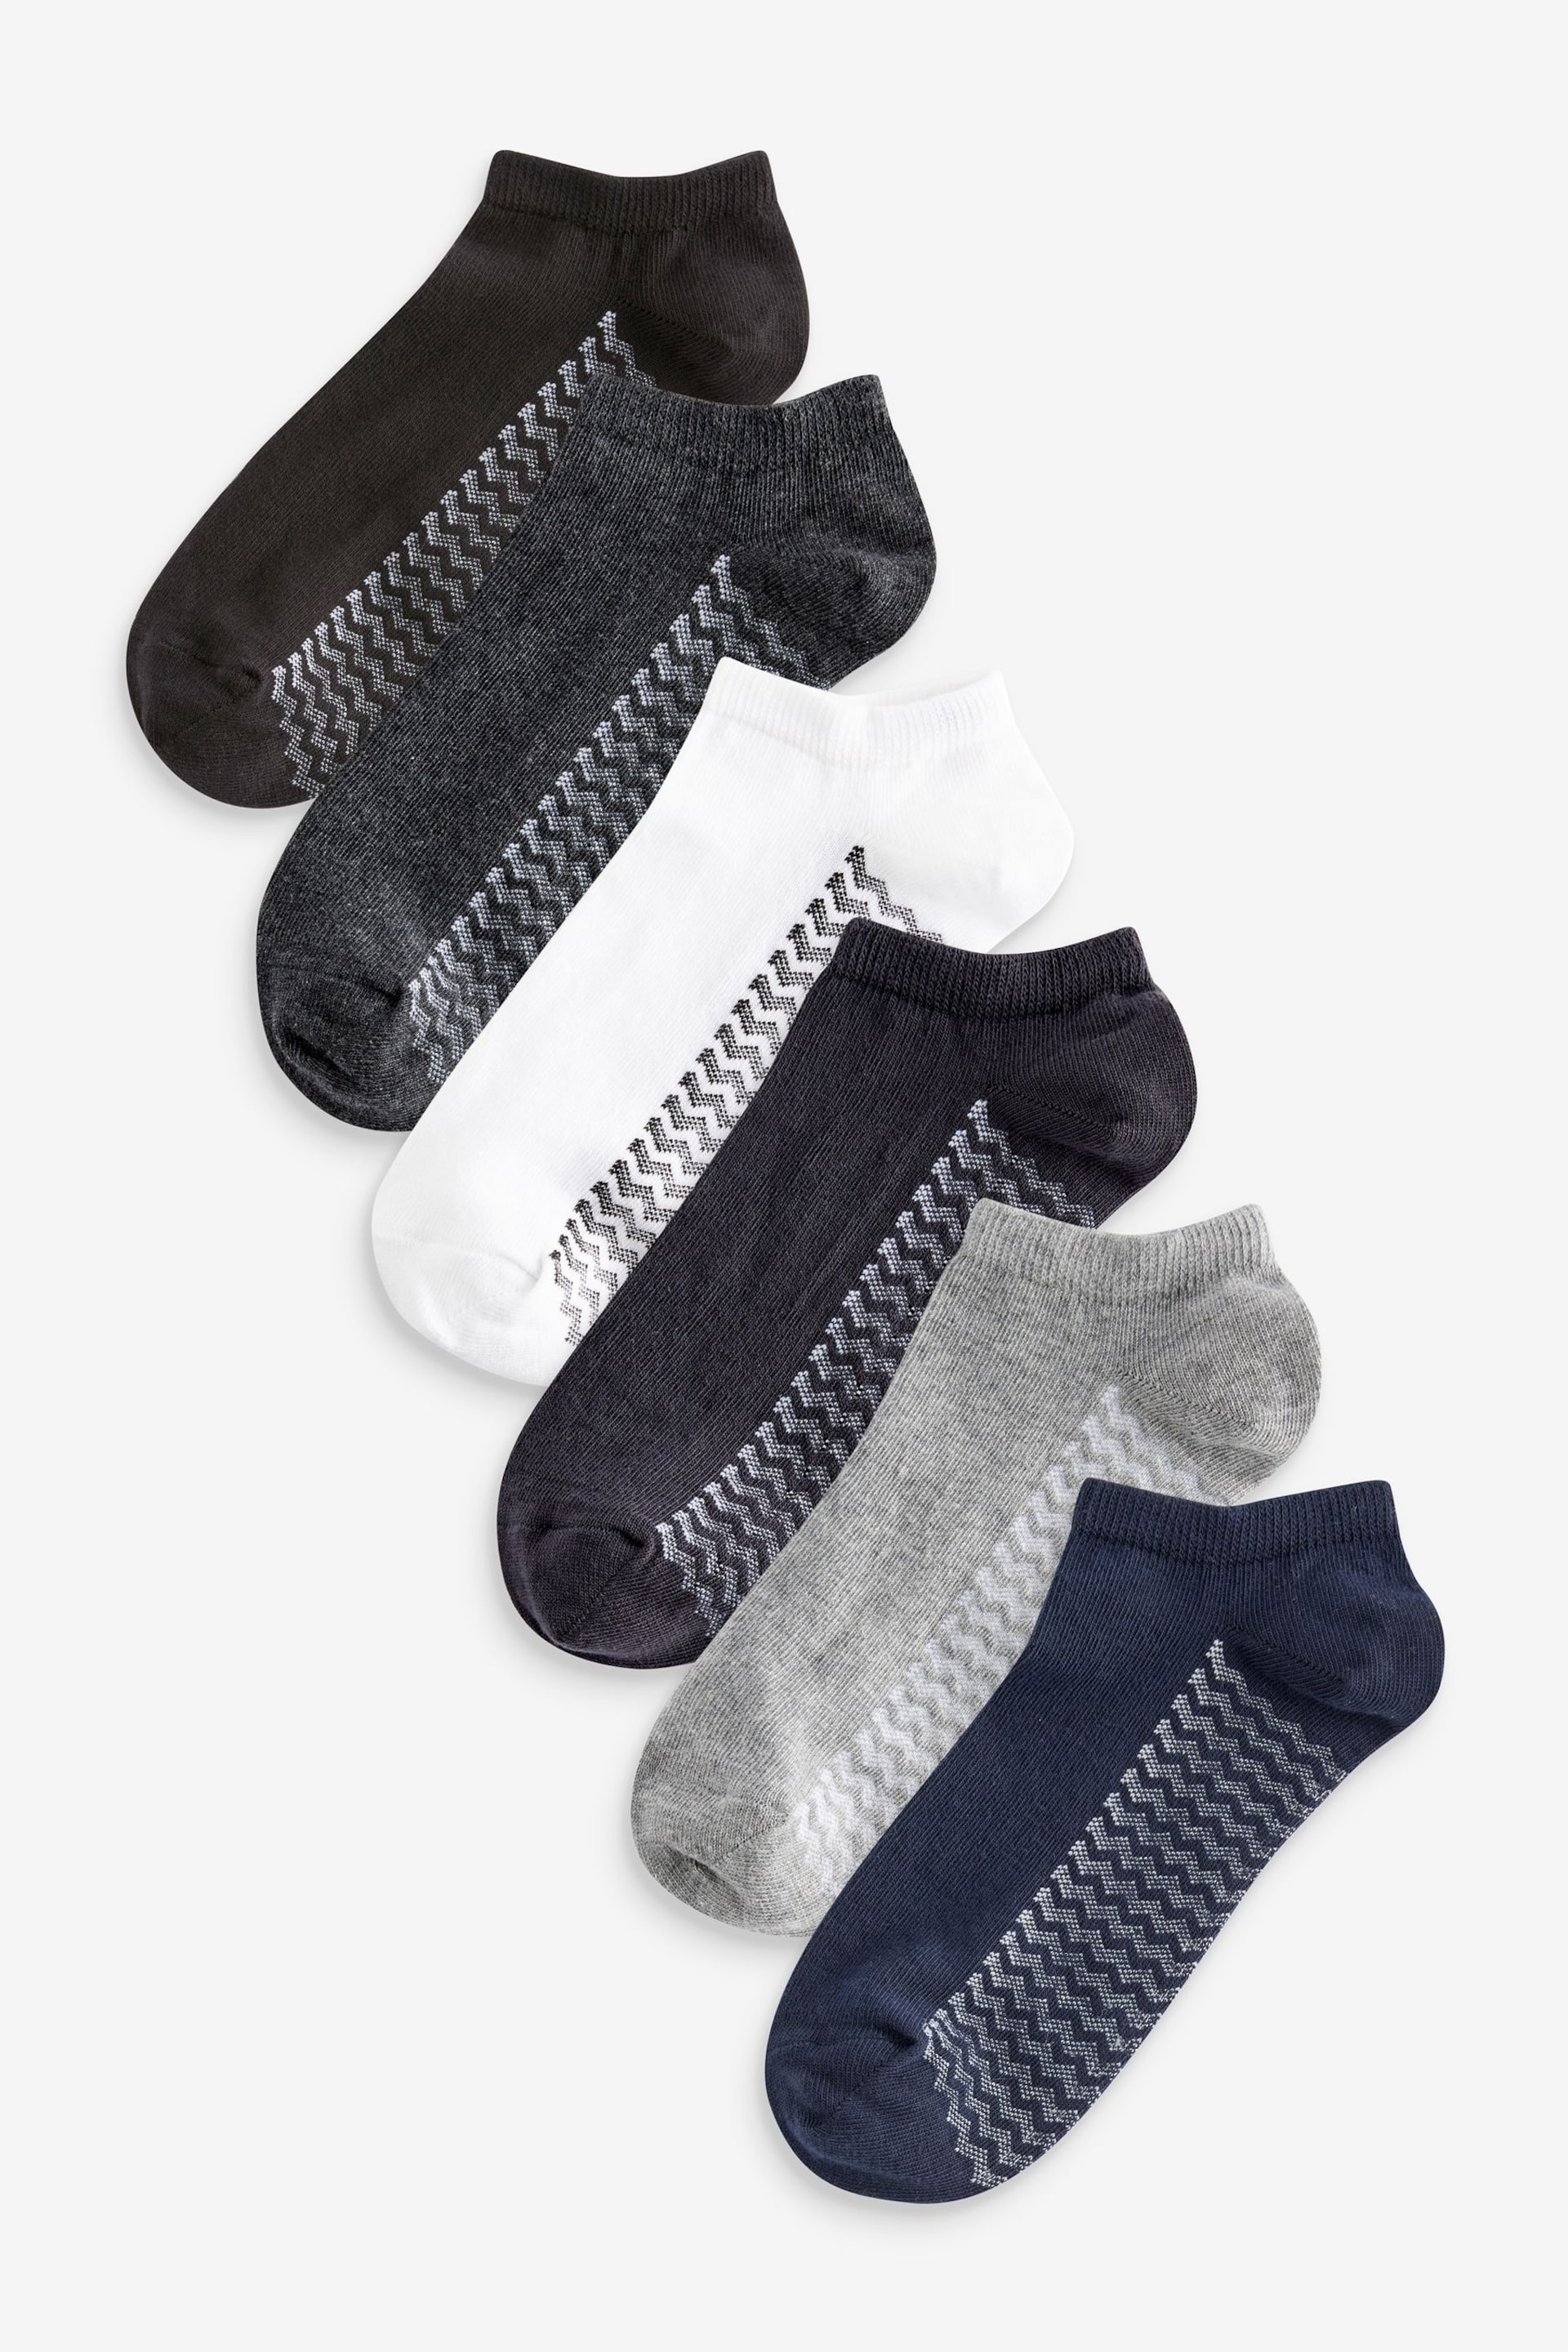 White/Grey/Black Zig Zag 6 Pack Trainer Socks - Image 1 of 9